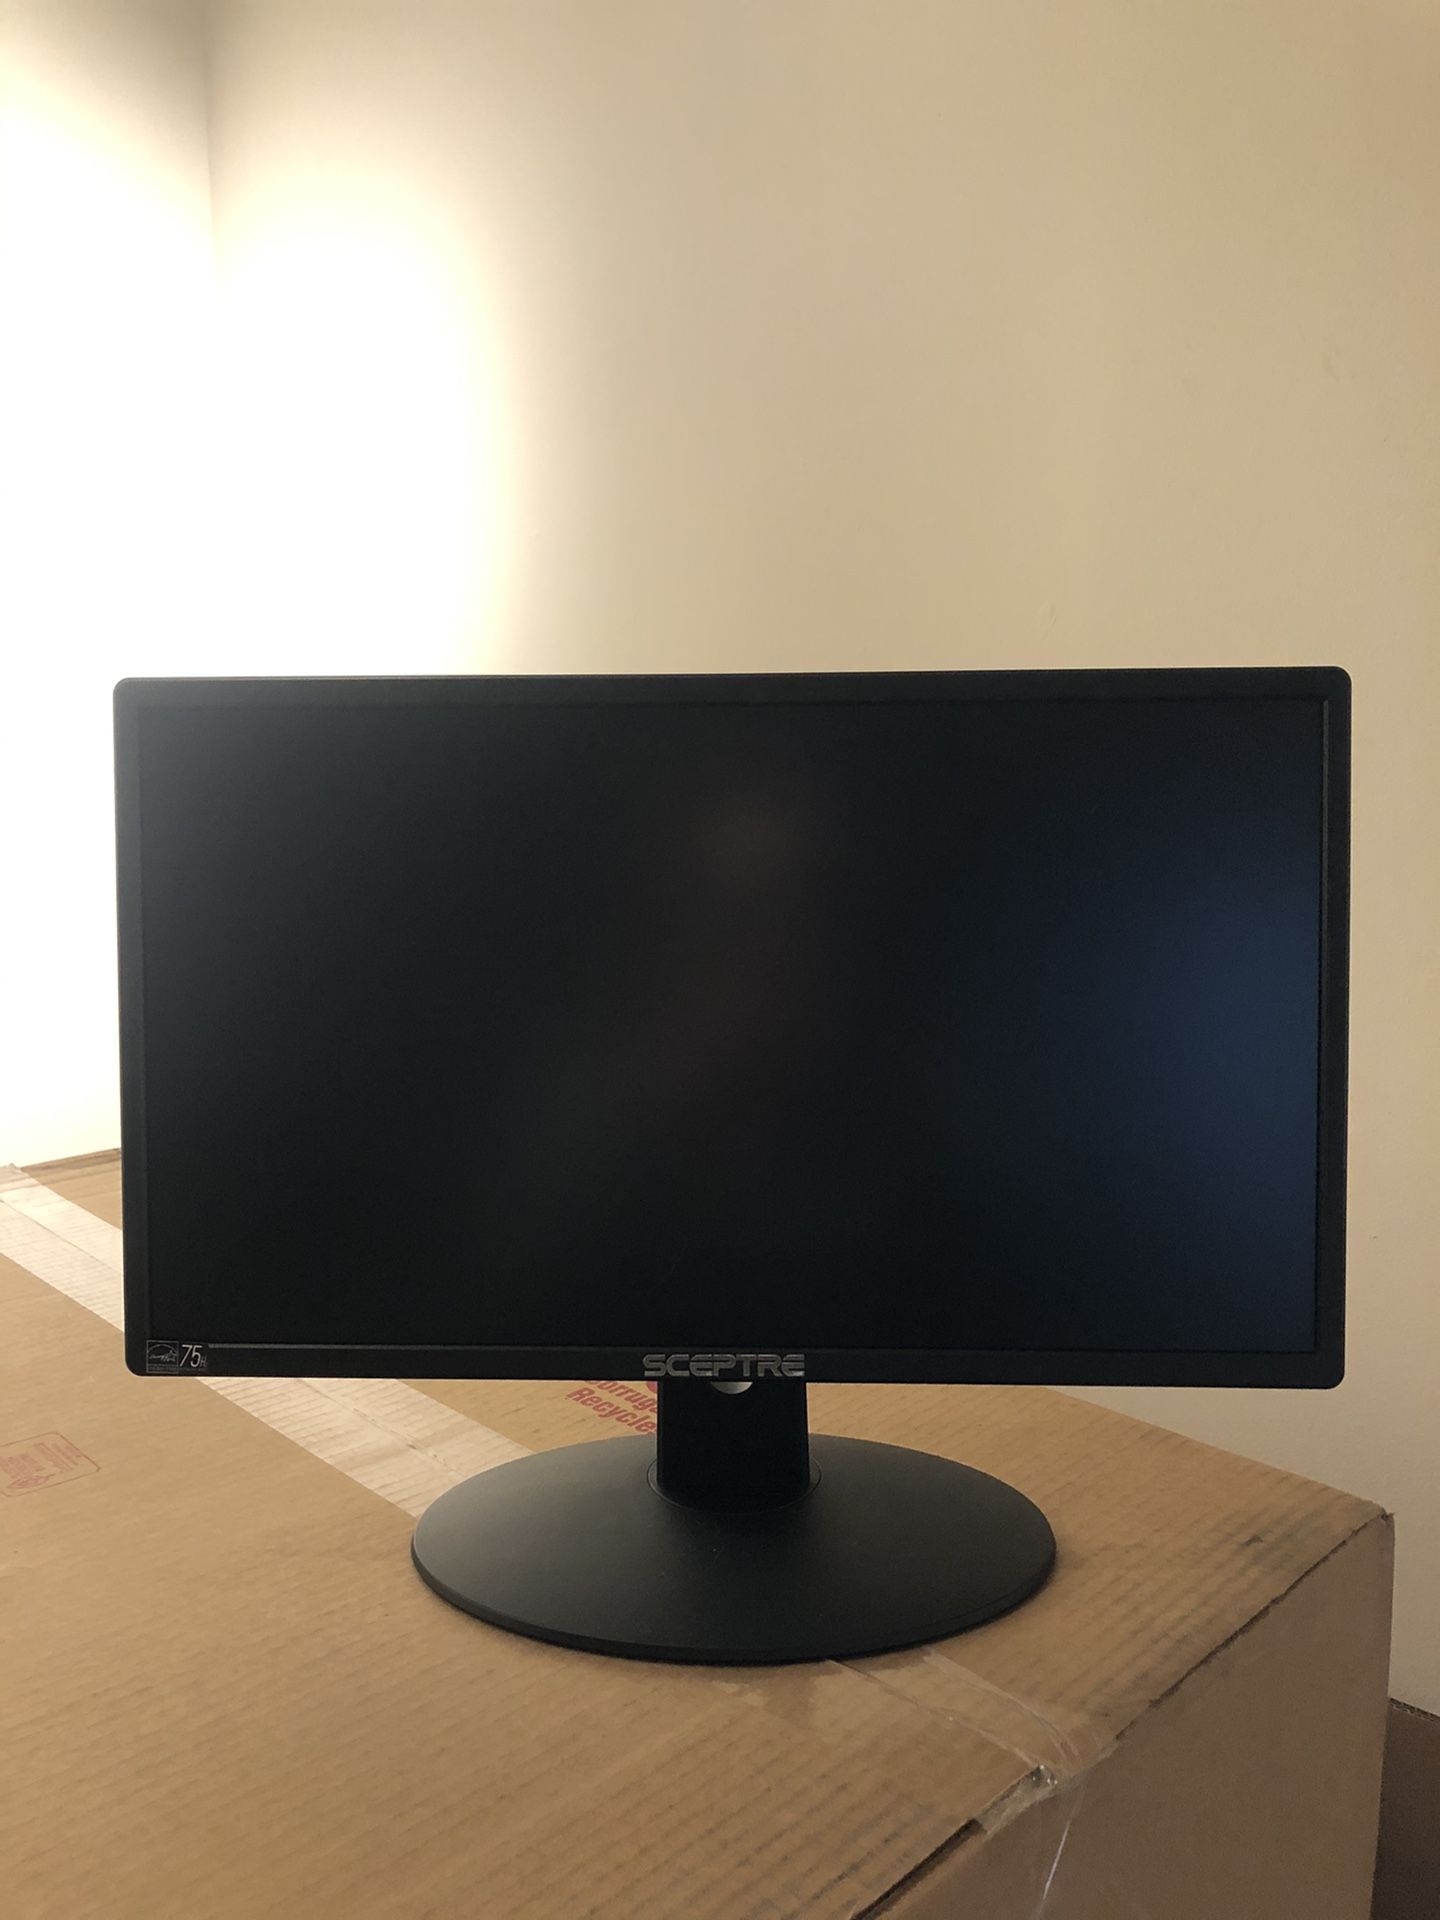 20” computer monitor